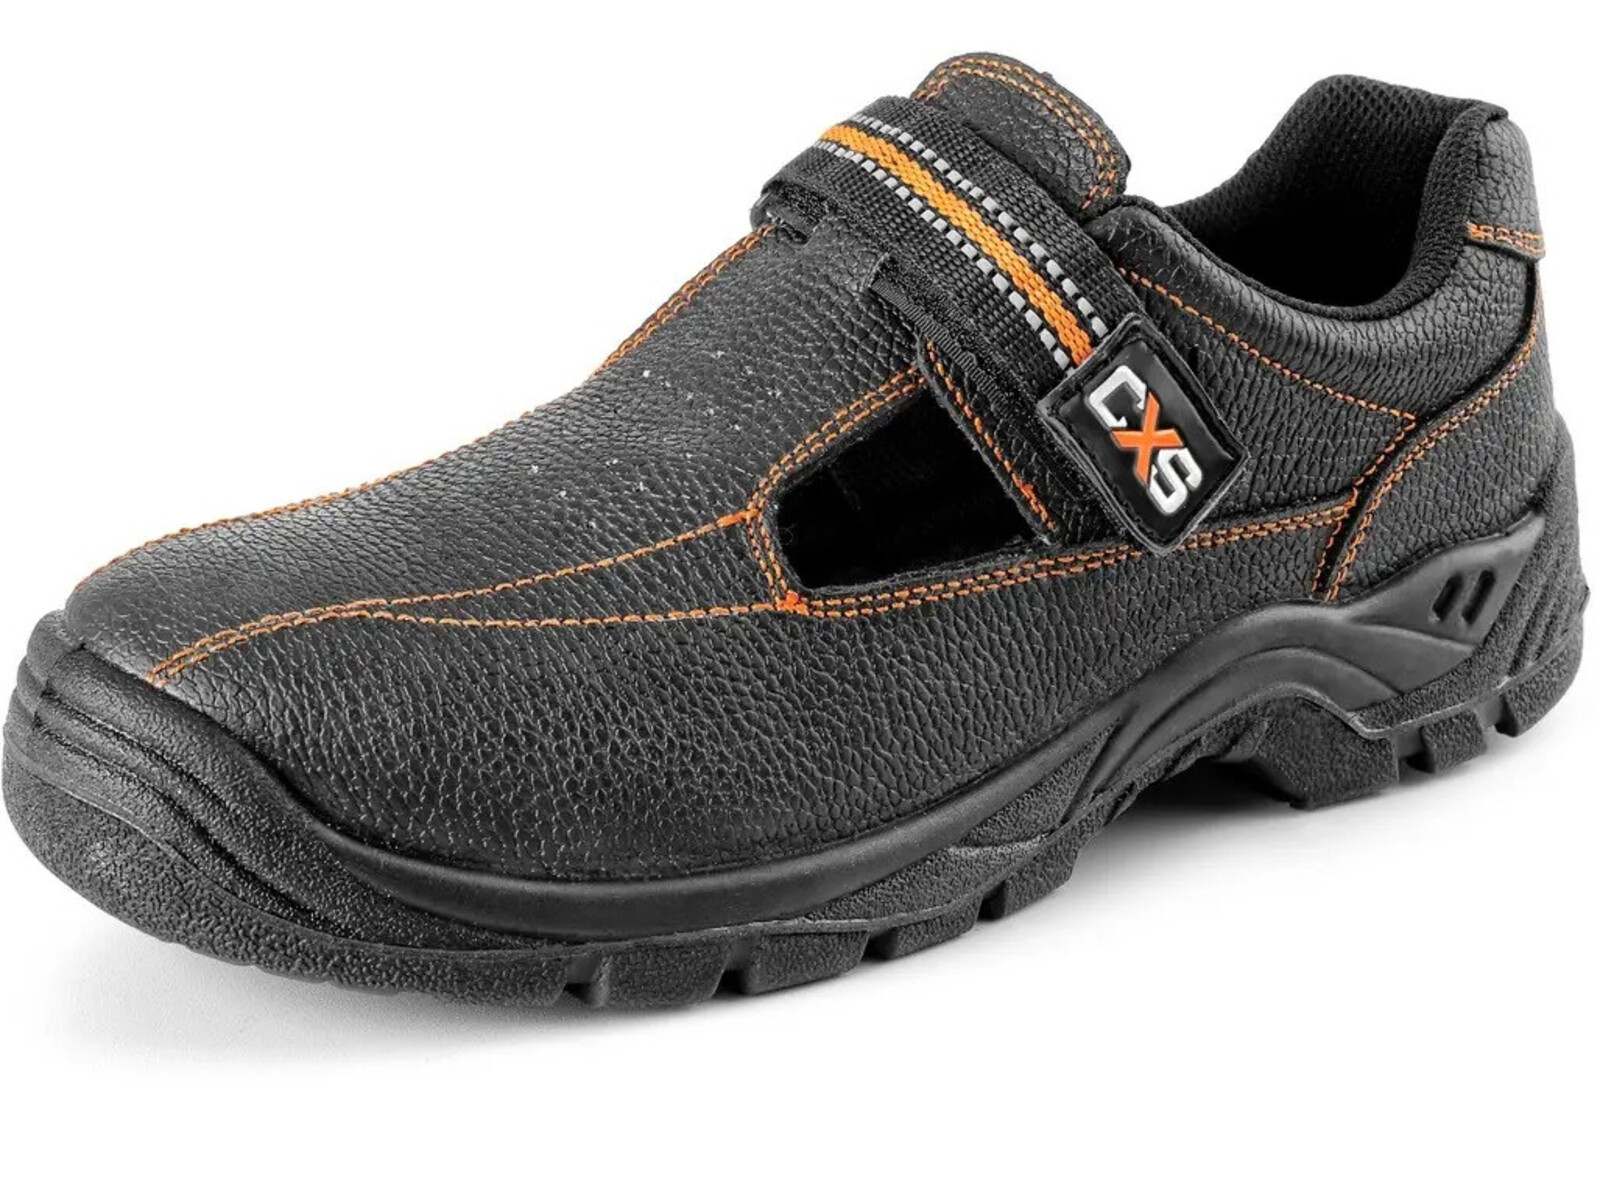 Bezpečnostné sandále CXS Stone Nefrit S1 SRC - veľkosť: 36, farba: čierna/oranžová